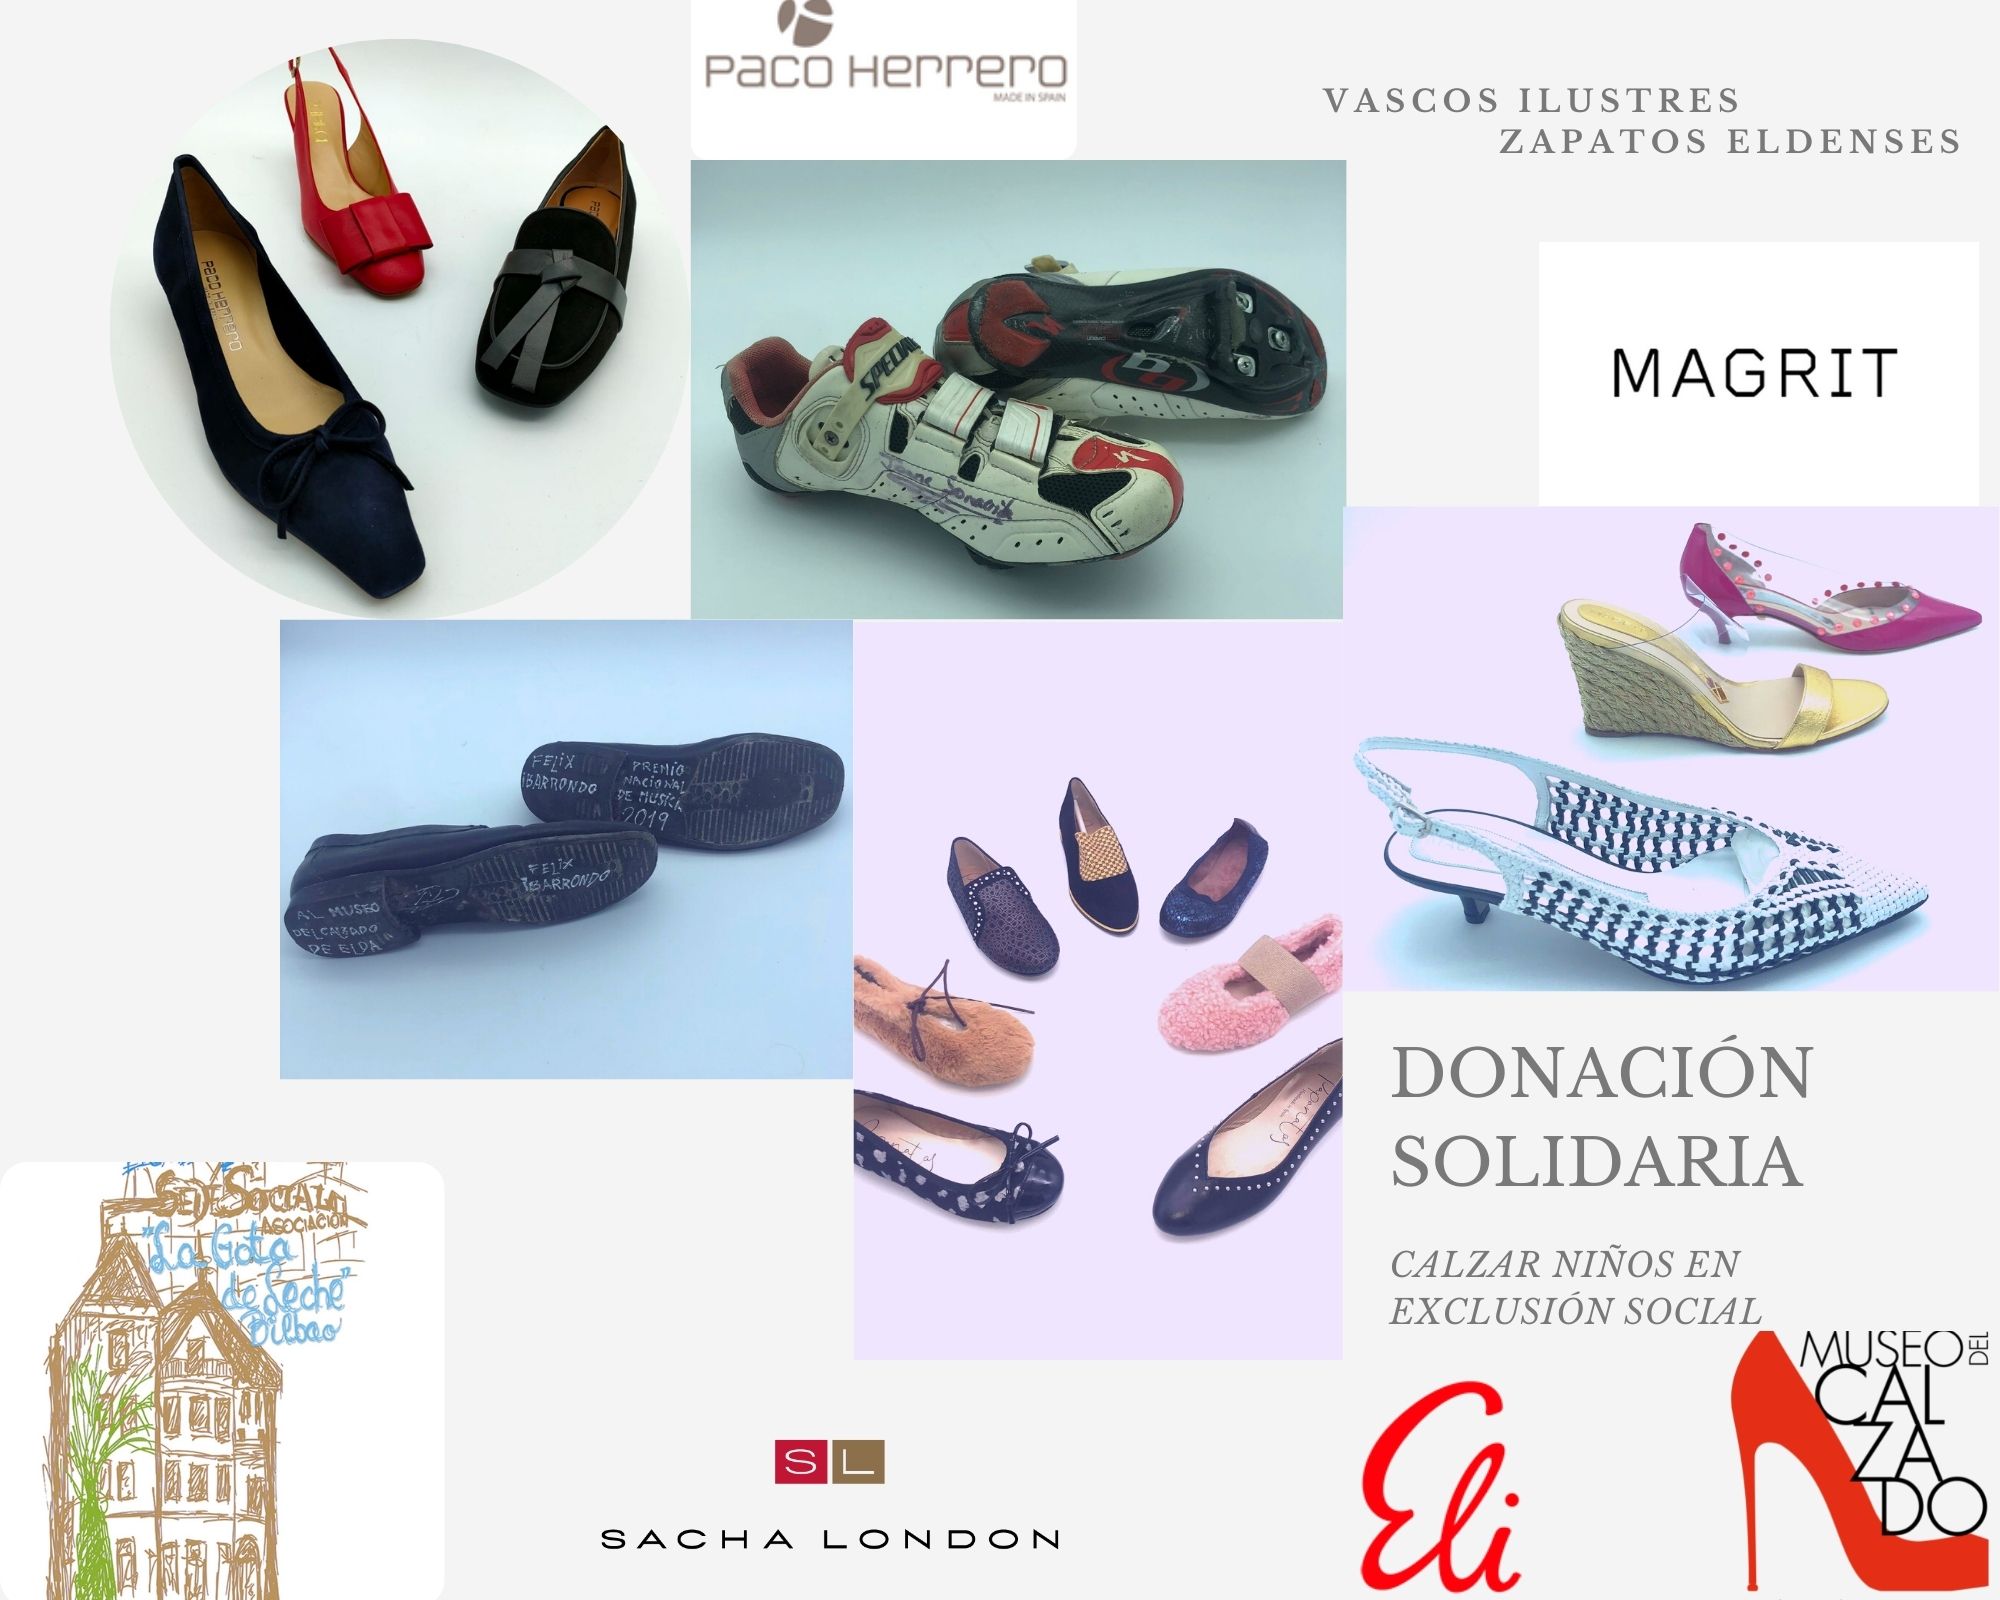 El Museo del Calzado de Elda recibe una nueva donación de zapatos de la asociación benéfica La Gota de Leche de Bilbao